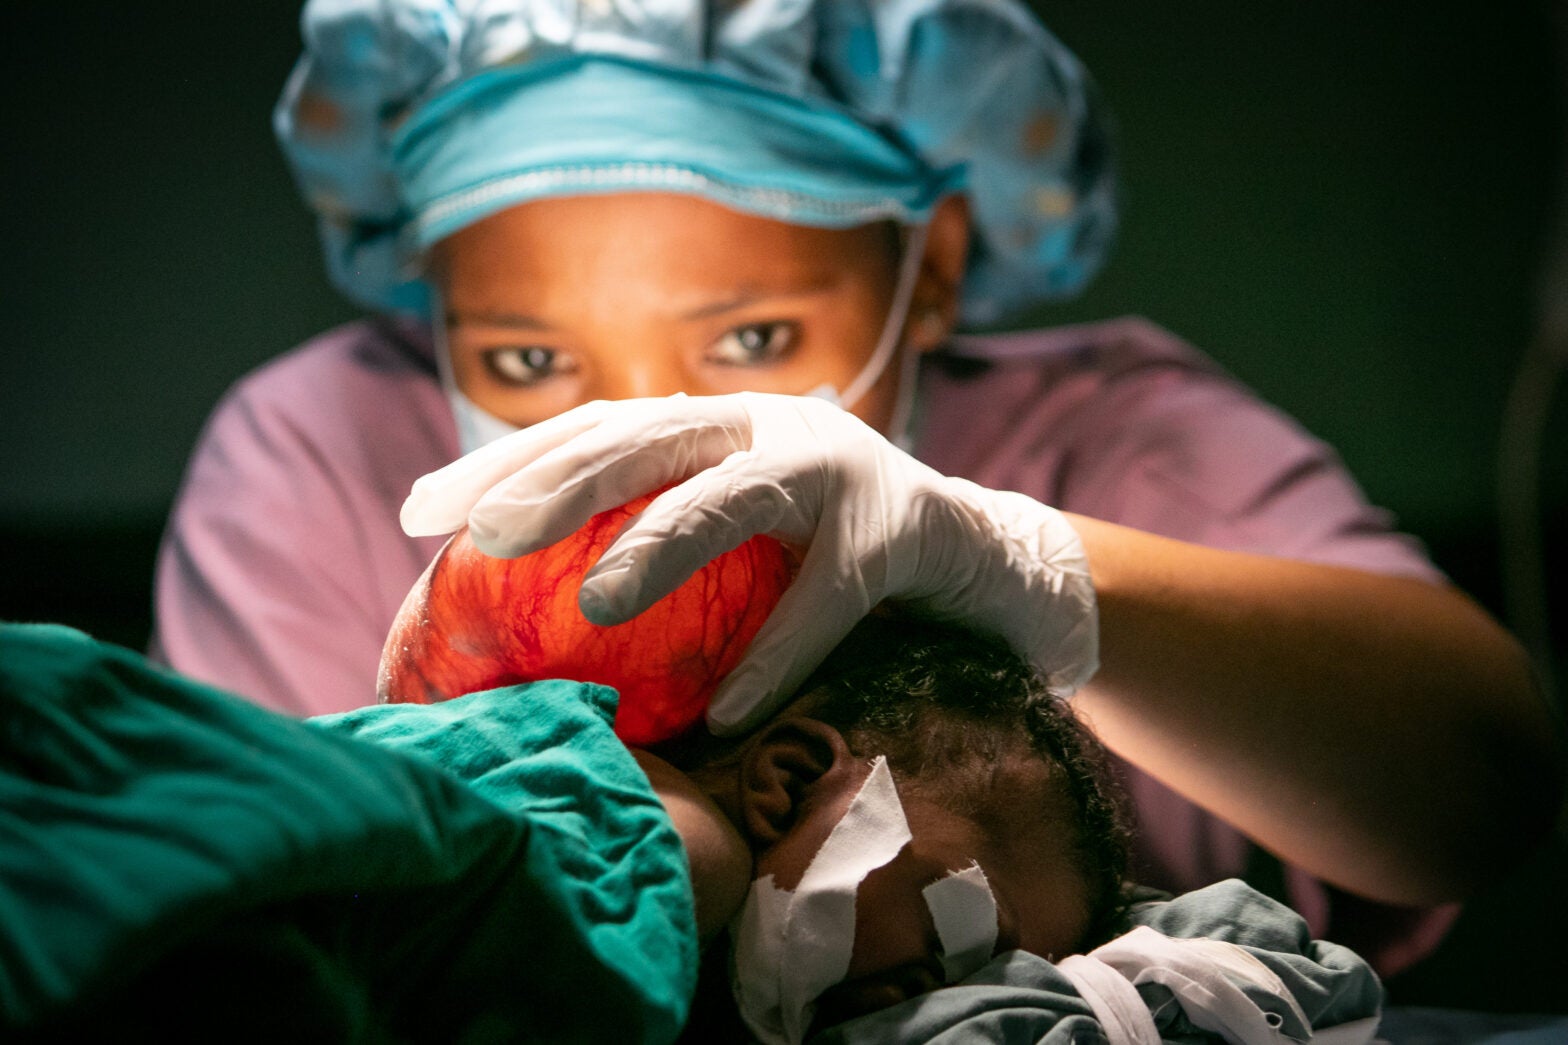 surgery in tanzania